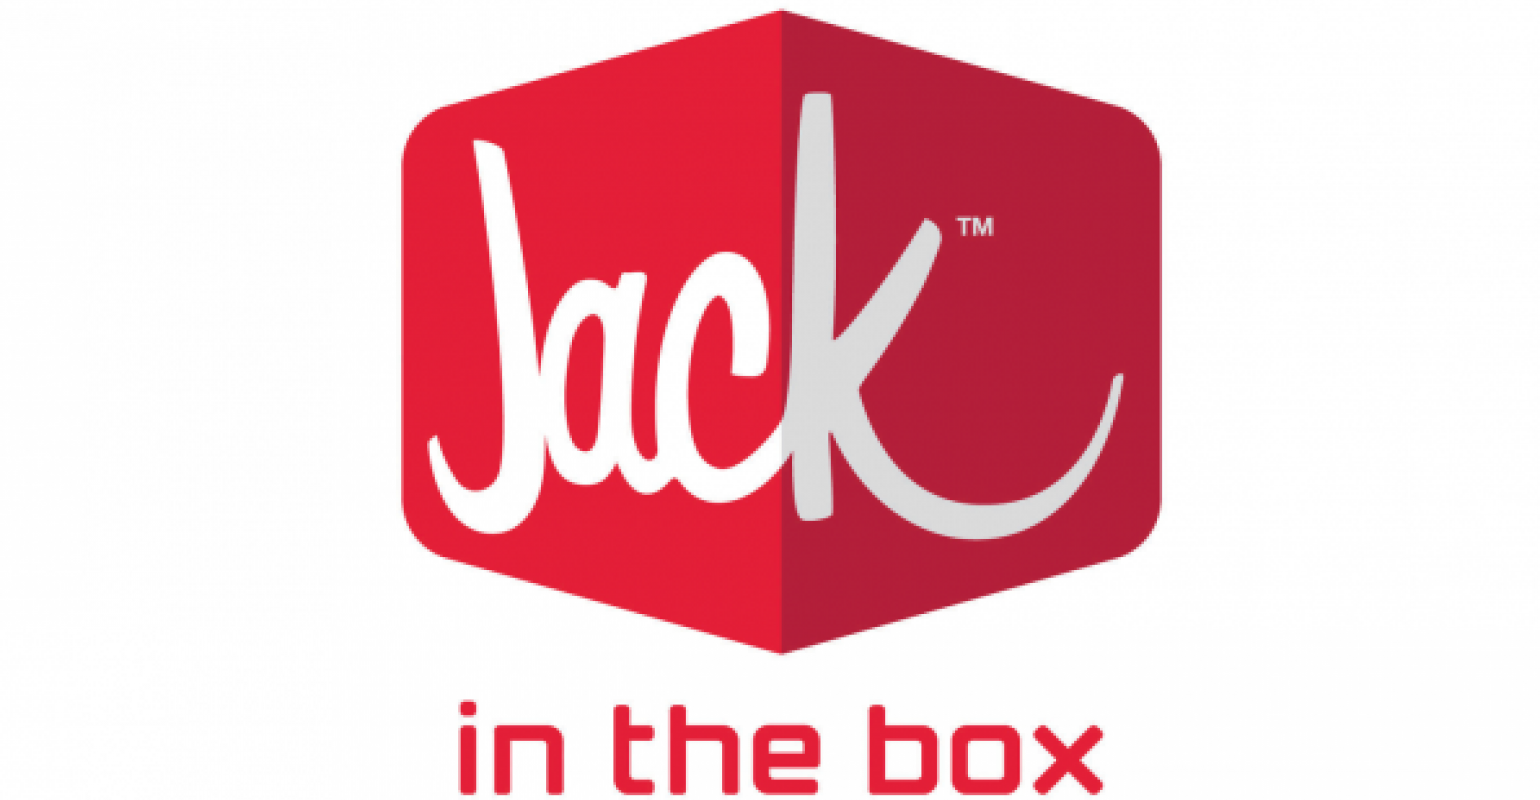 jack box in